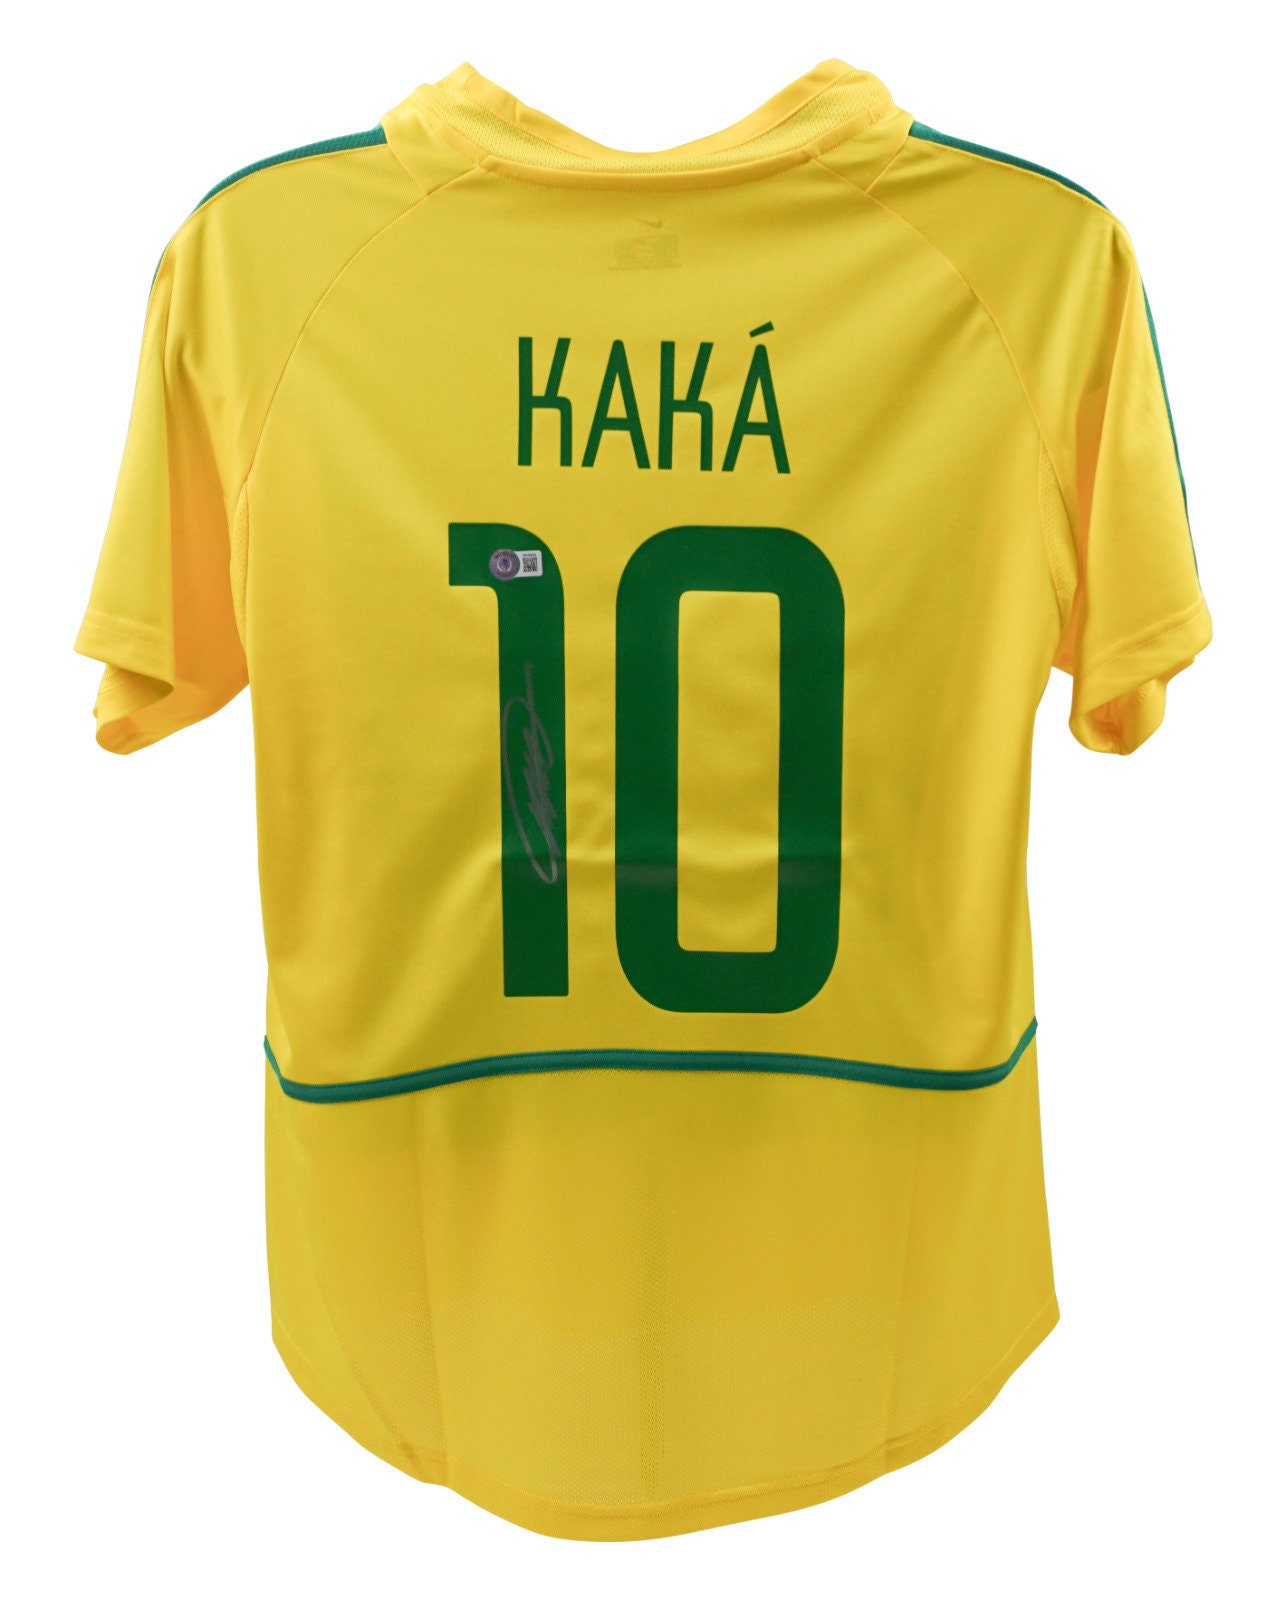 Buy Kaka Brazil Jersey Online In India -  India